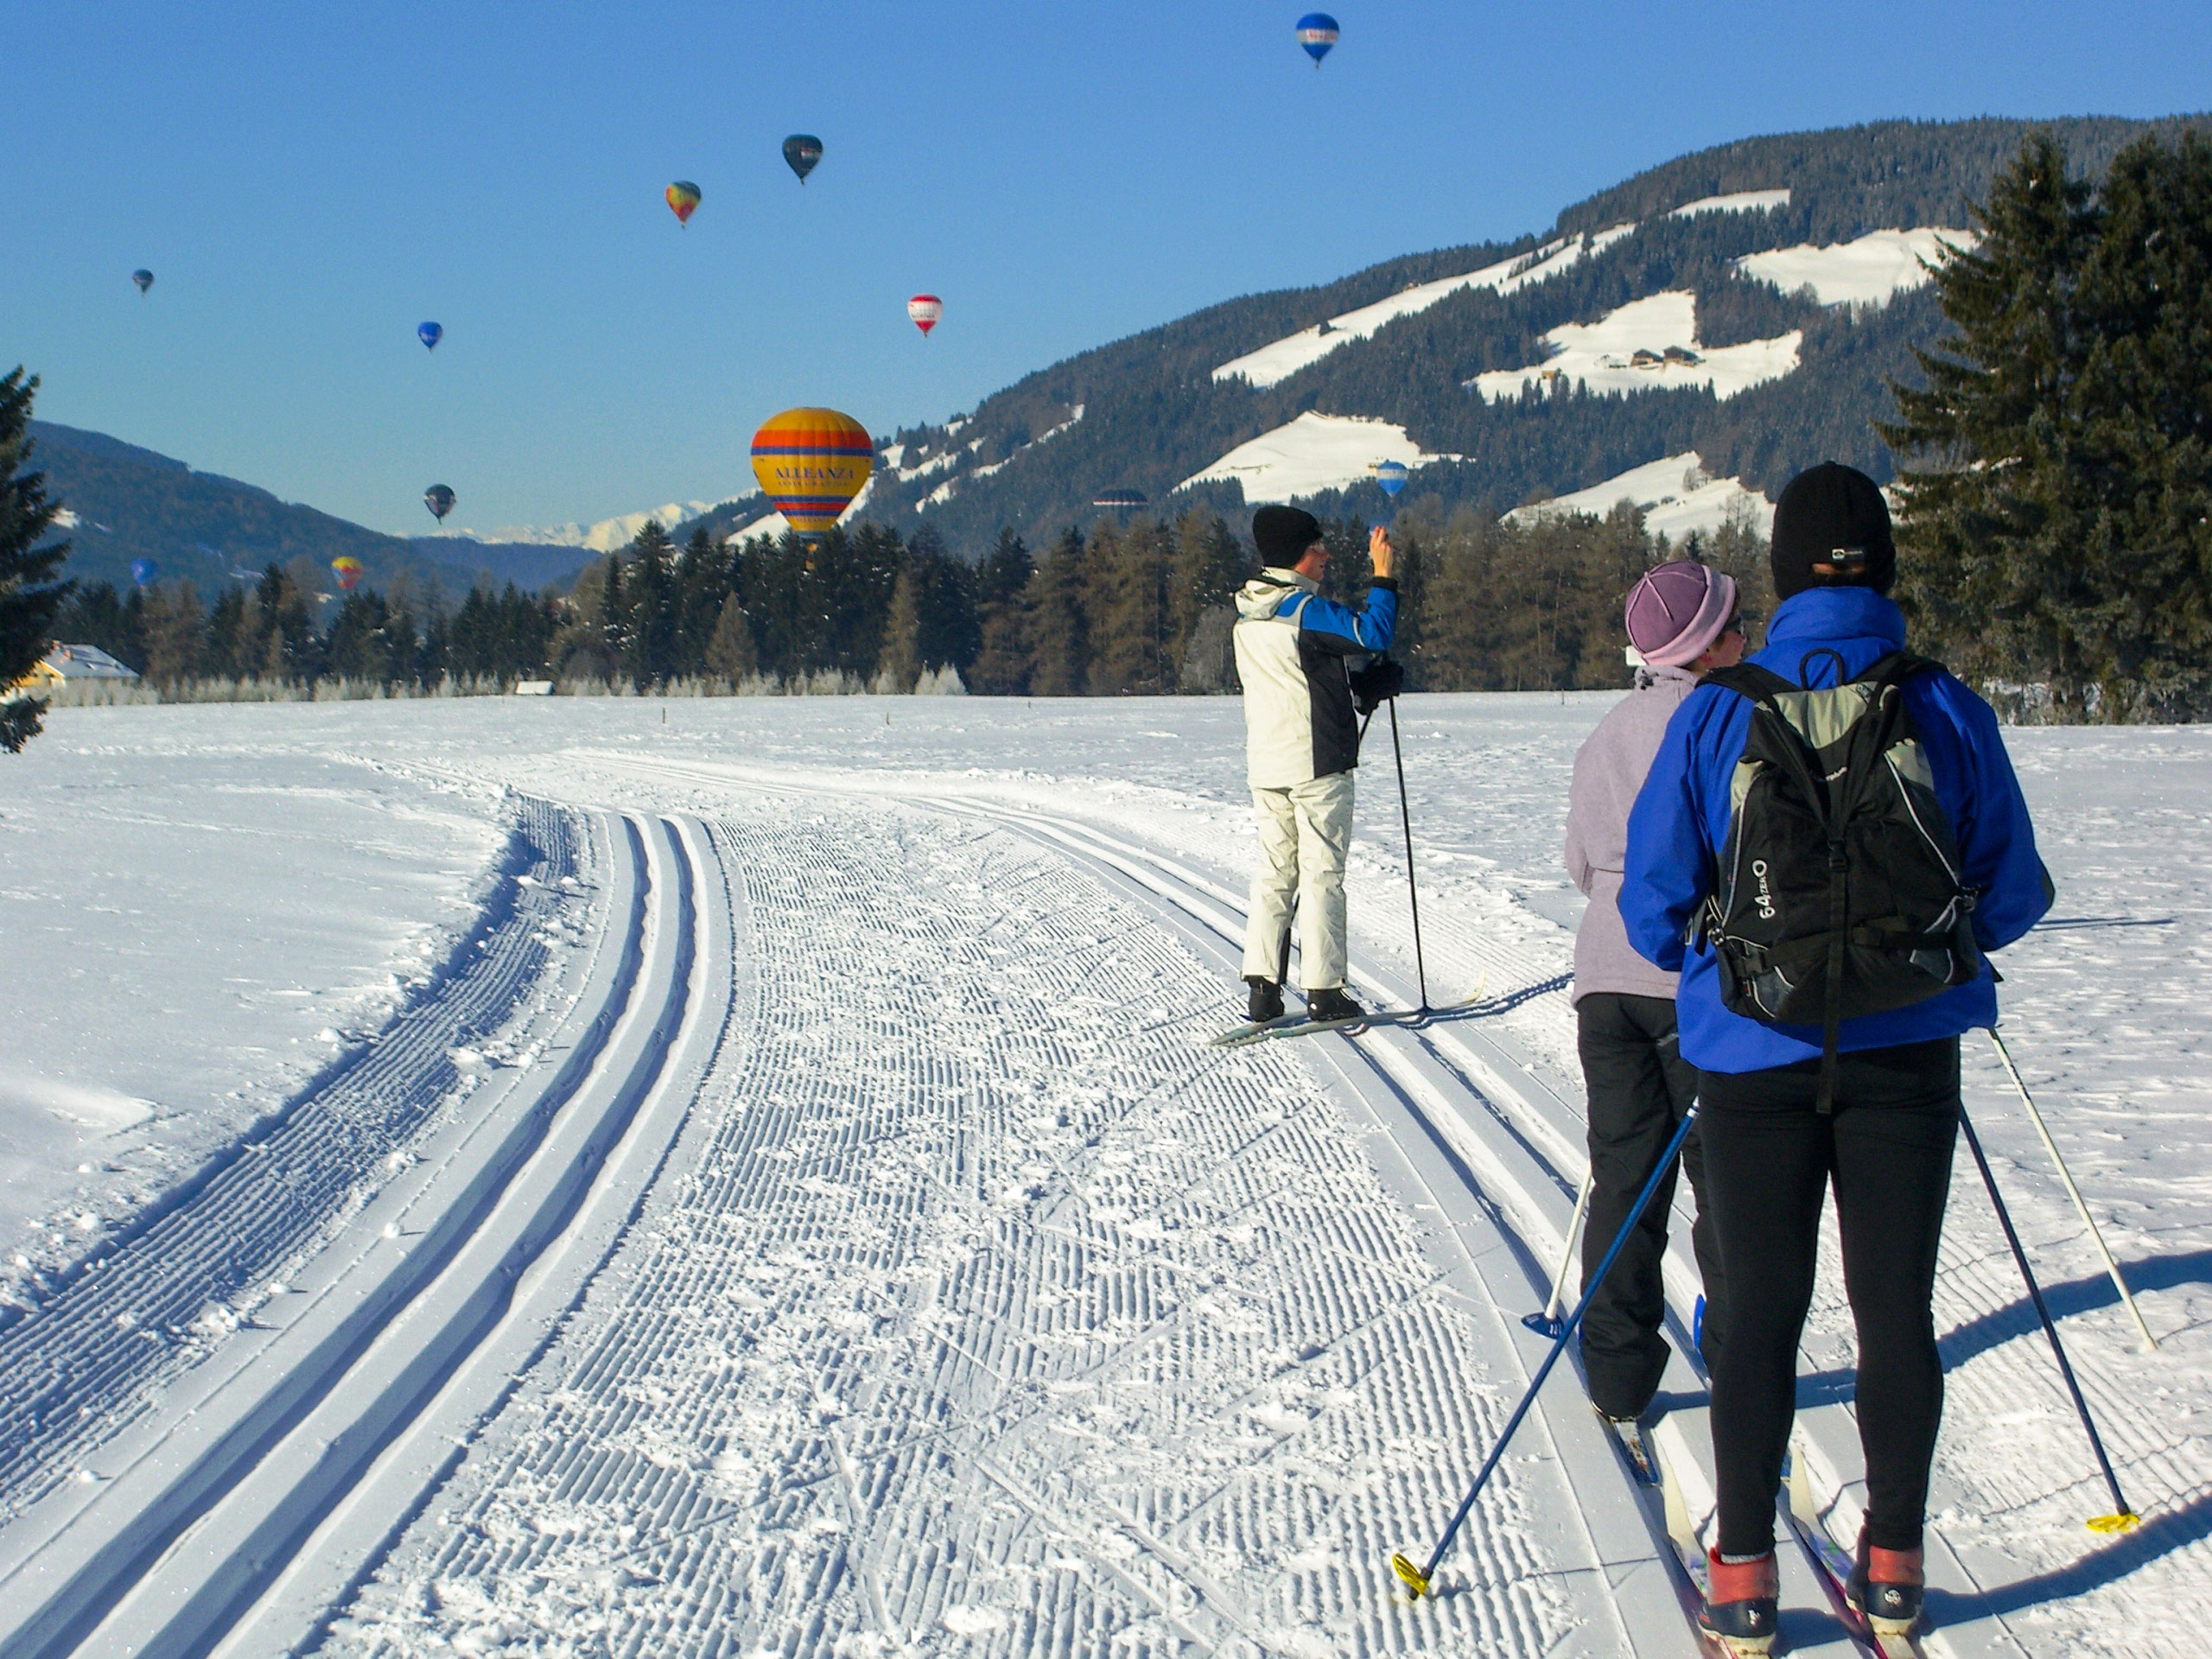 Hot air ballons flight in Winter